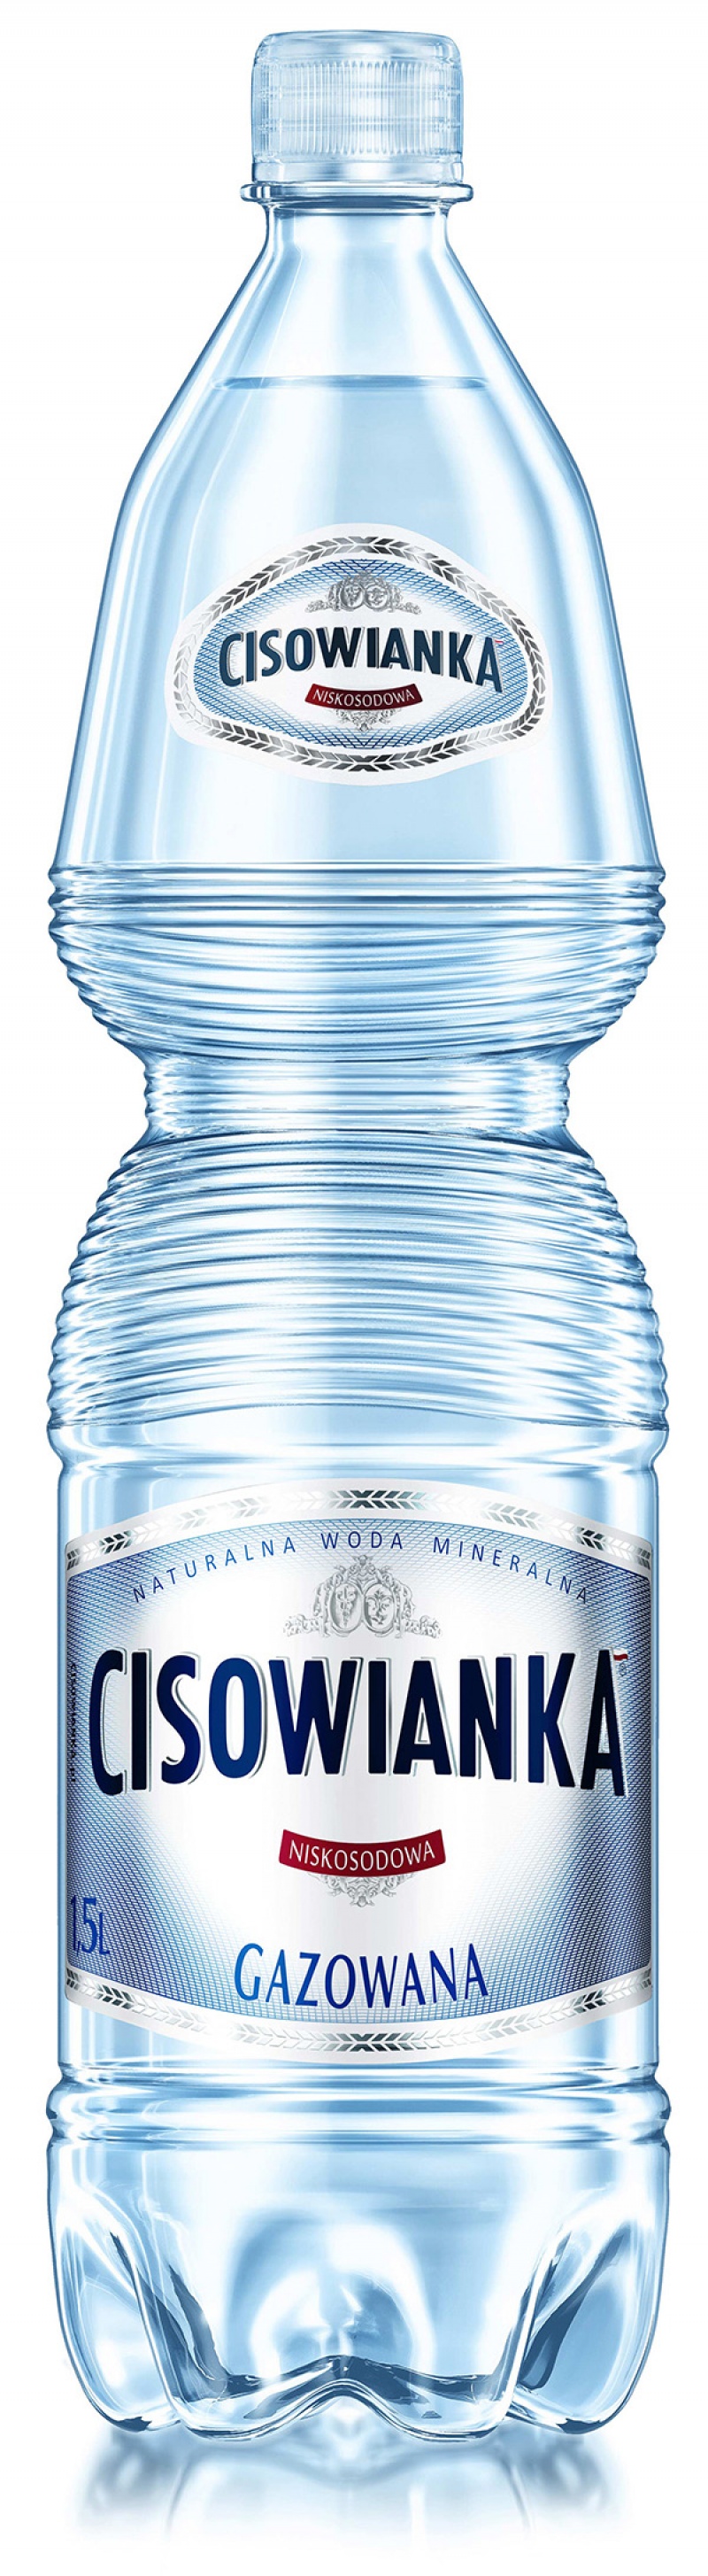 Woda CISOWIANKA, gazowana, butelka plastikowa, 1,5l - zdjęcie (2